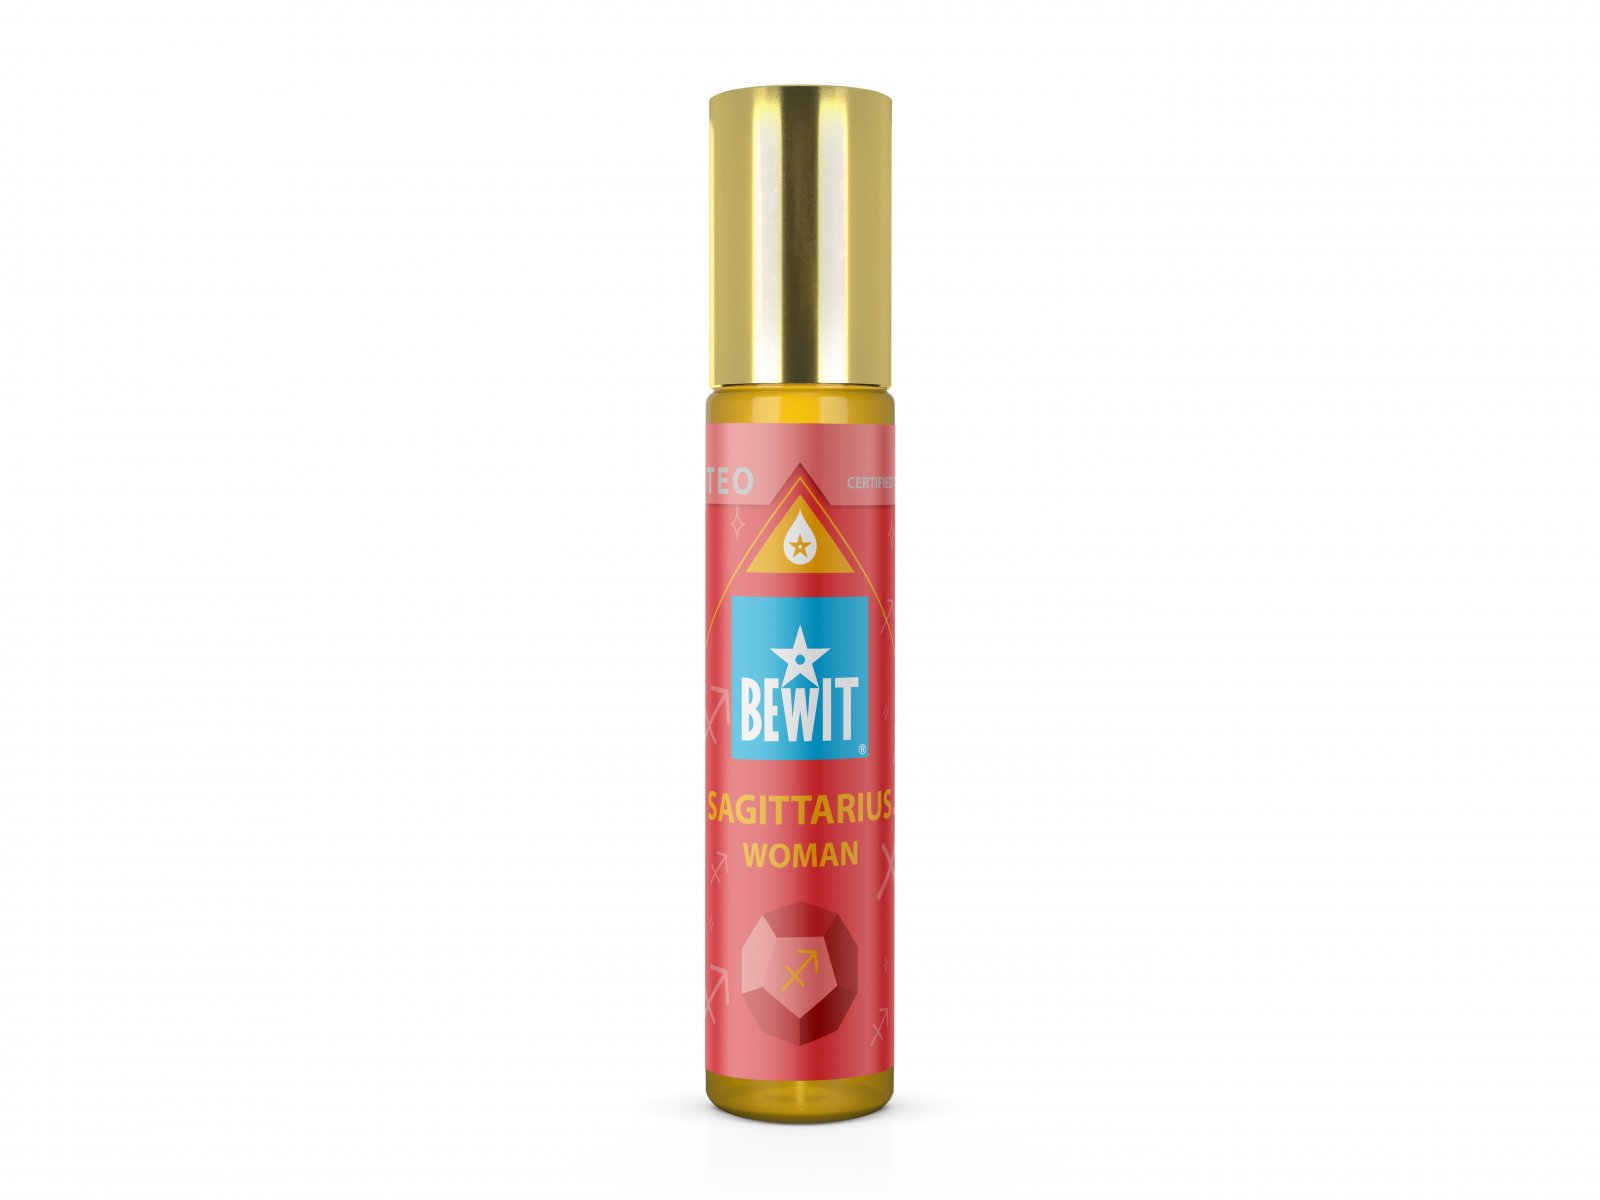 BEWIT WOMAN SAGITTARIUS (STŘELEC) - Ženský roll-on olejový parfém